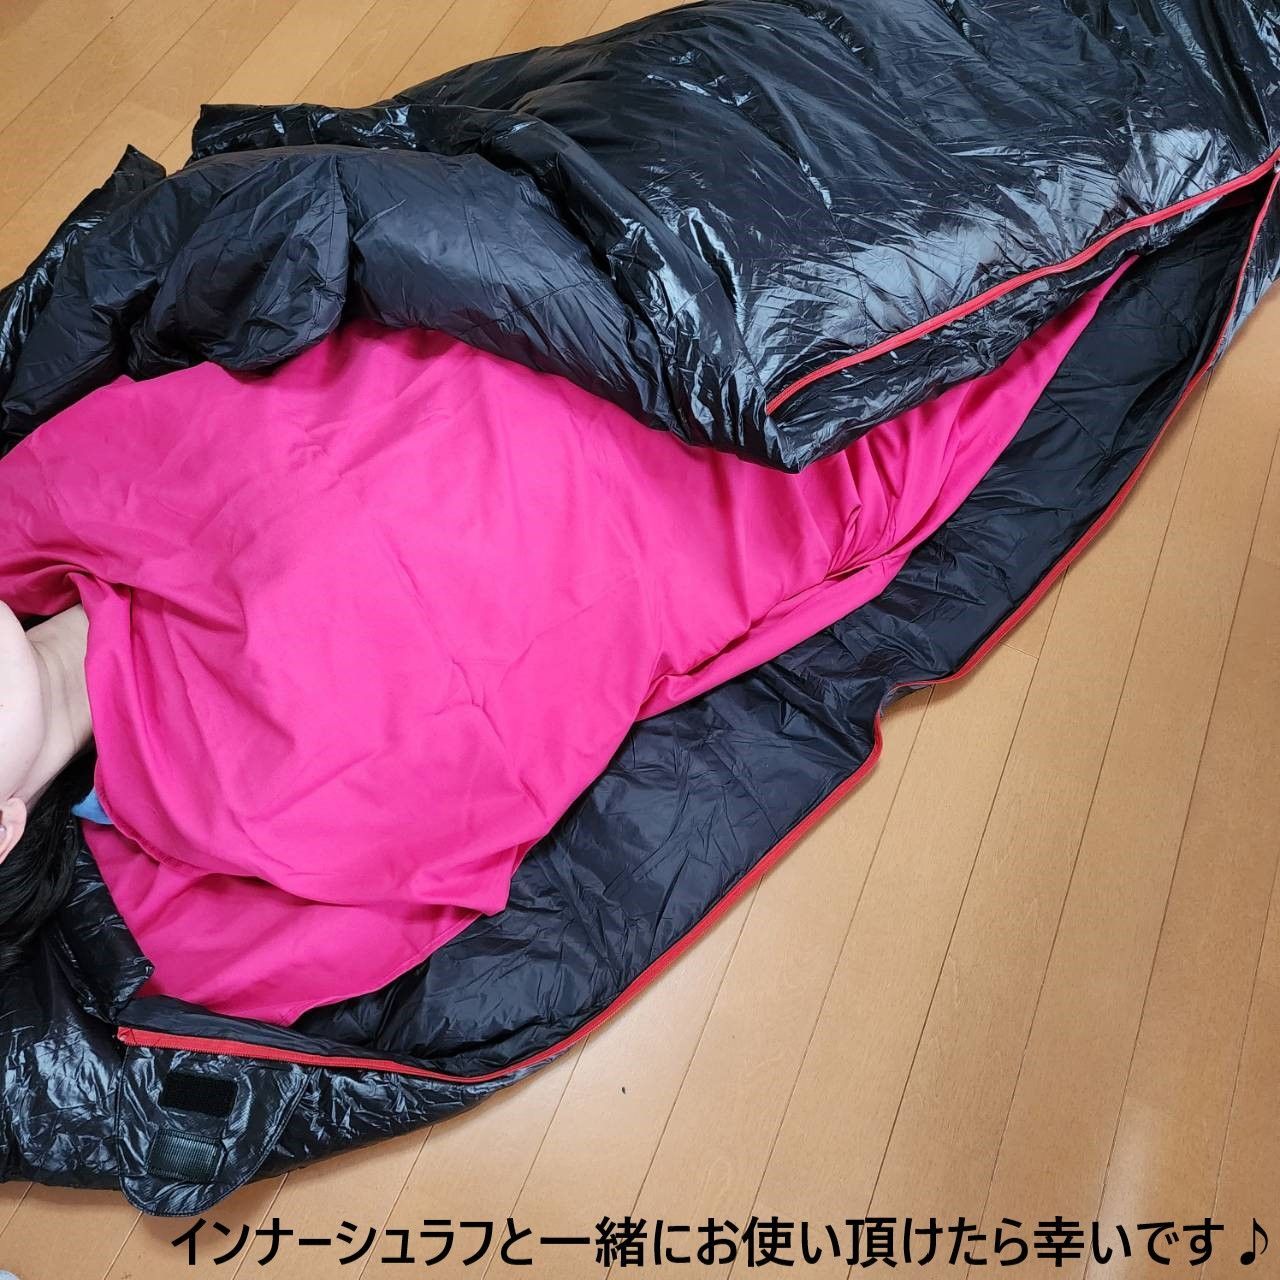 シーツアウトドア 防水 グース ダウン マミー型 寝袋 シュラフ